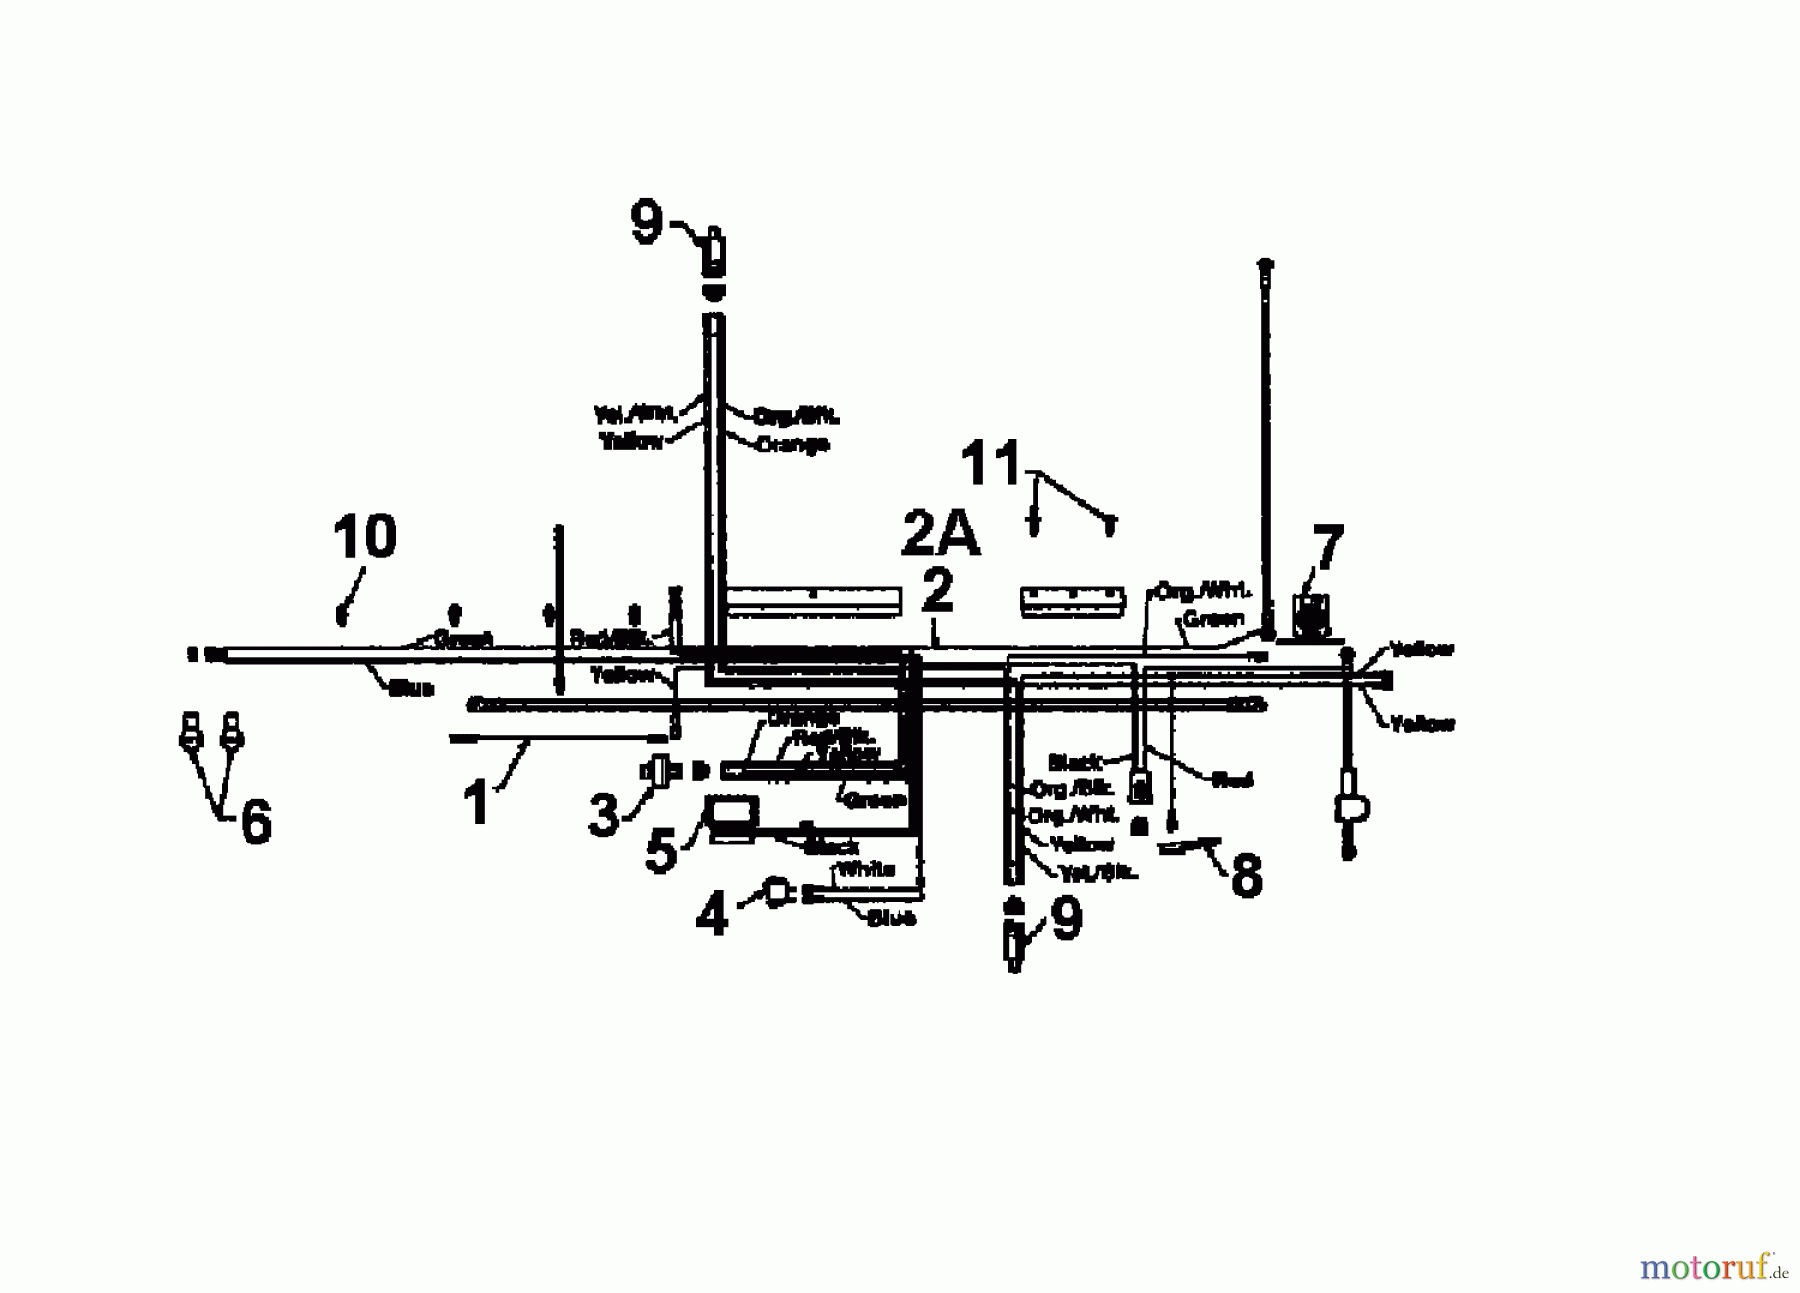  Edenparc Lawn tractors B 14596 13AM670F608  (1997) Wiring diagram single cylinder